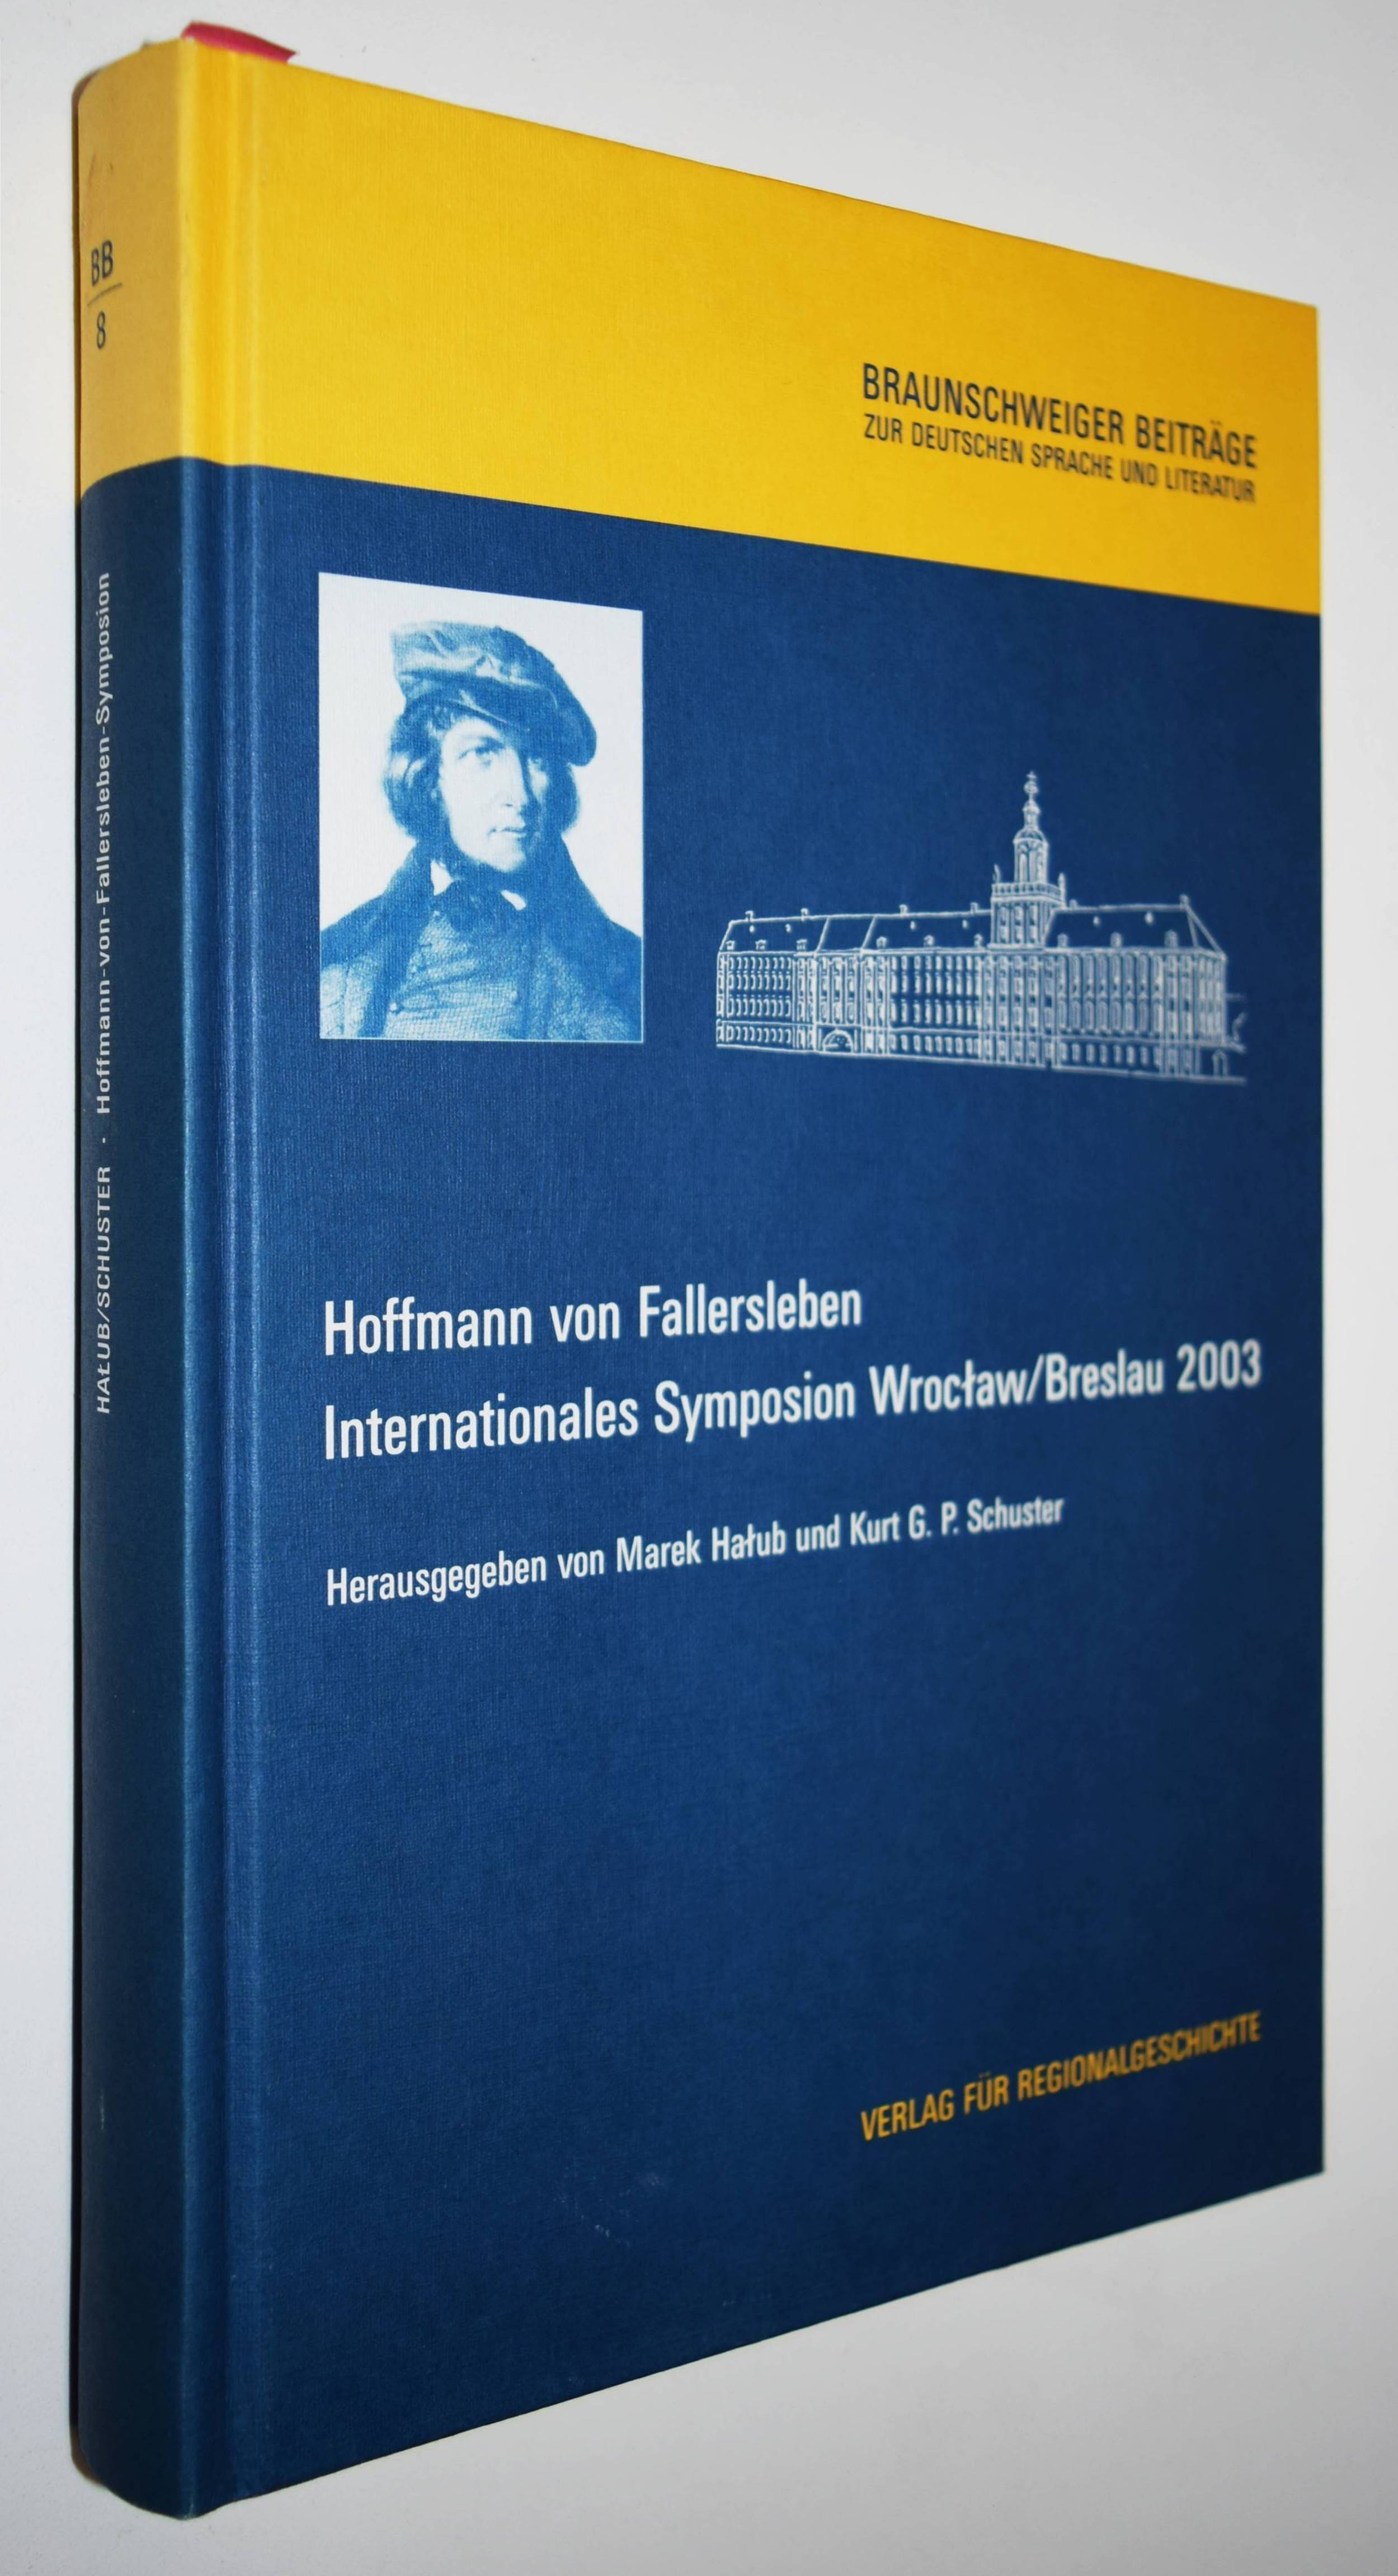 Hoffmann von Fallersleben. Internationales Symposion Wroclaw/Breslau - Halub, Marek u. Kurt G. P. Schuster (Hrsg).